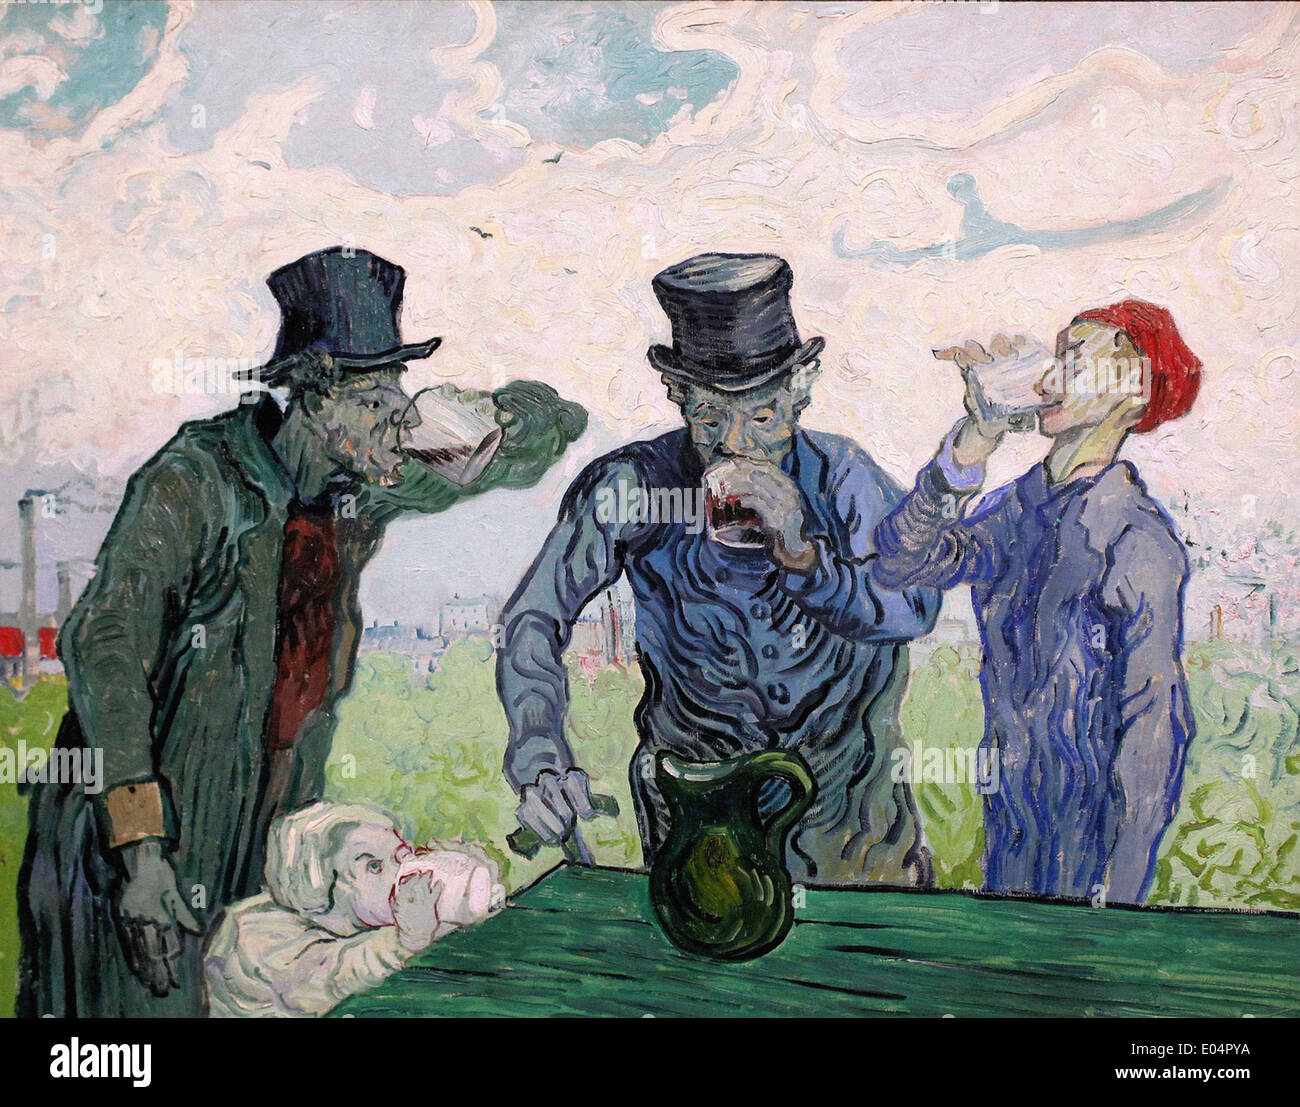 Van Gogh Stockfotos und -bilder Kaufen - Alamy